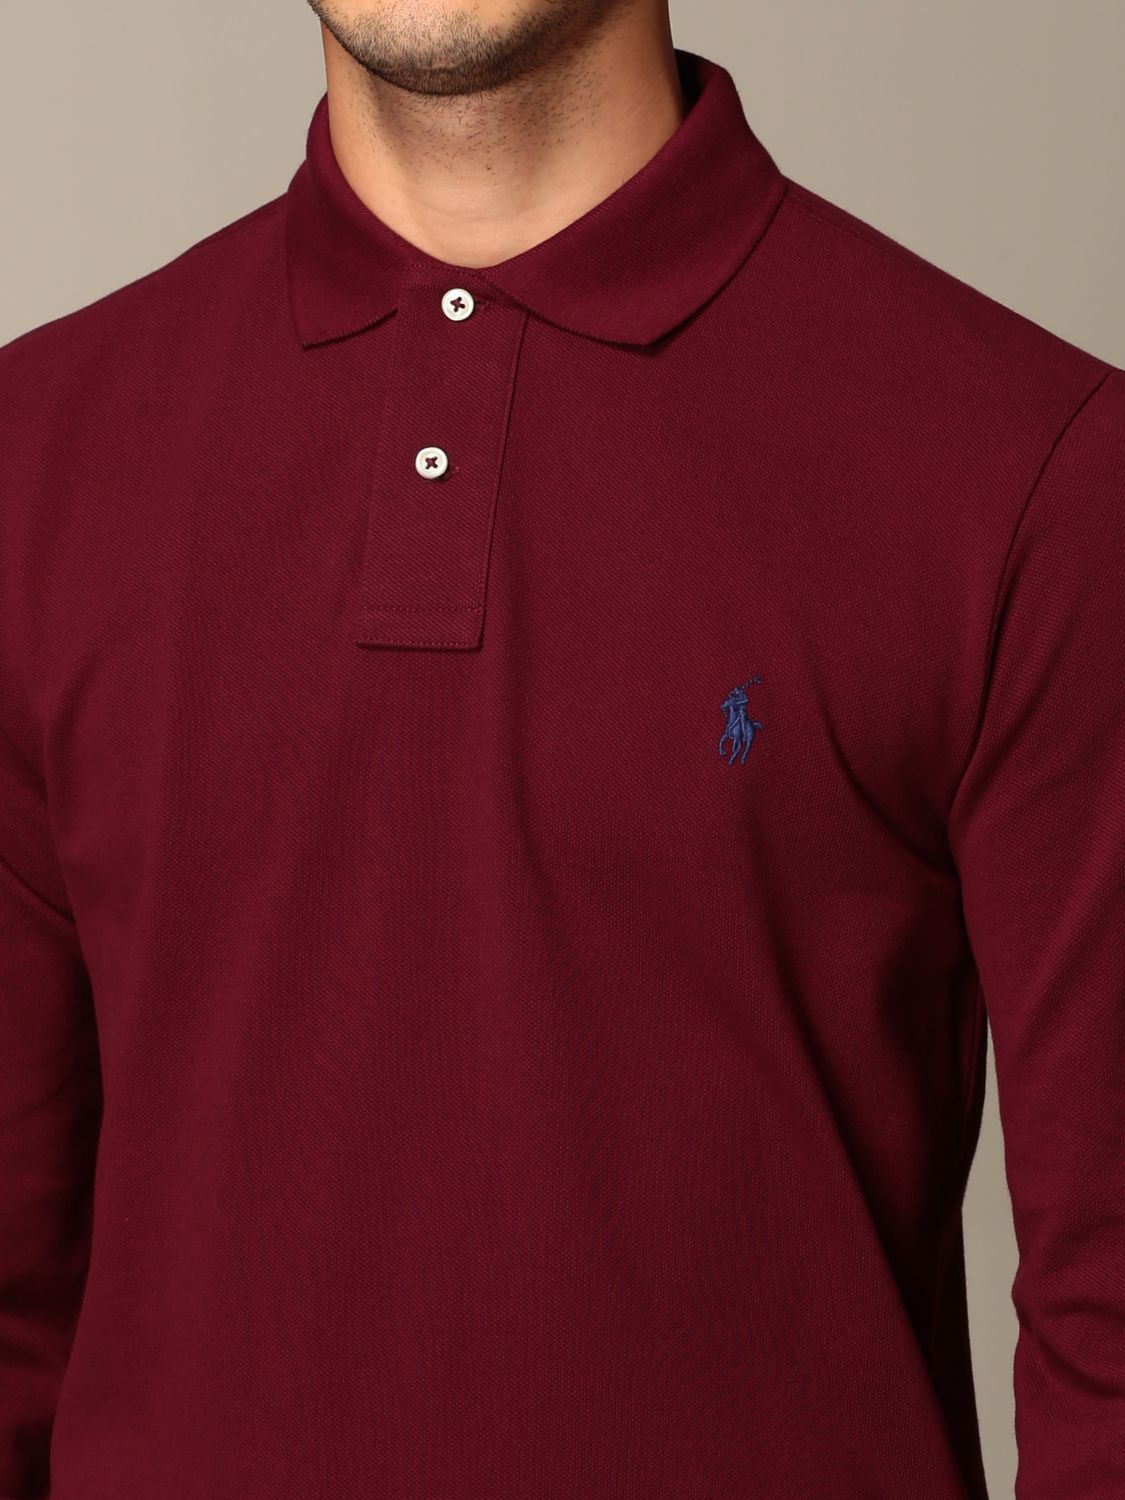 Polo Ralph Lauren Outlet: polo shirt for men - Burgundy | Polo Ralph Lauren  polo shirt 710681126 online on 